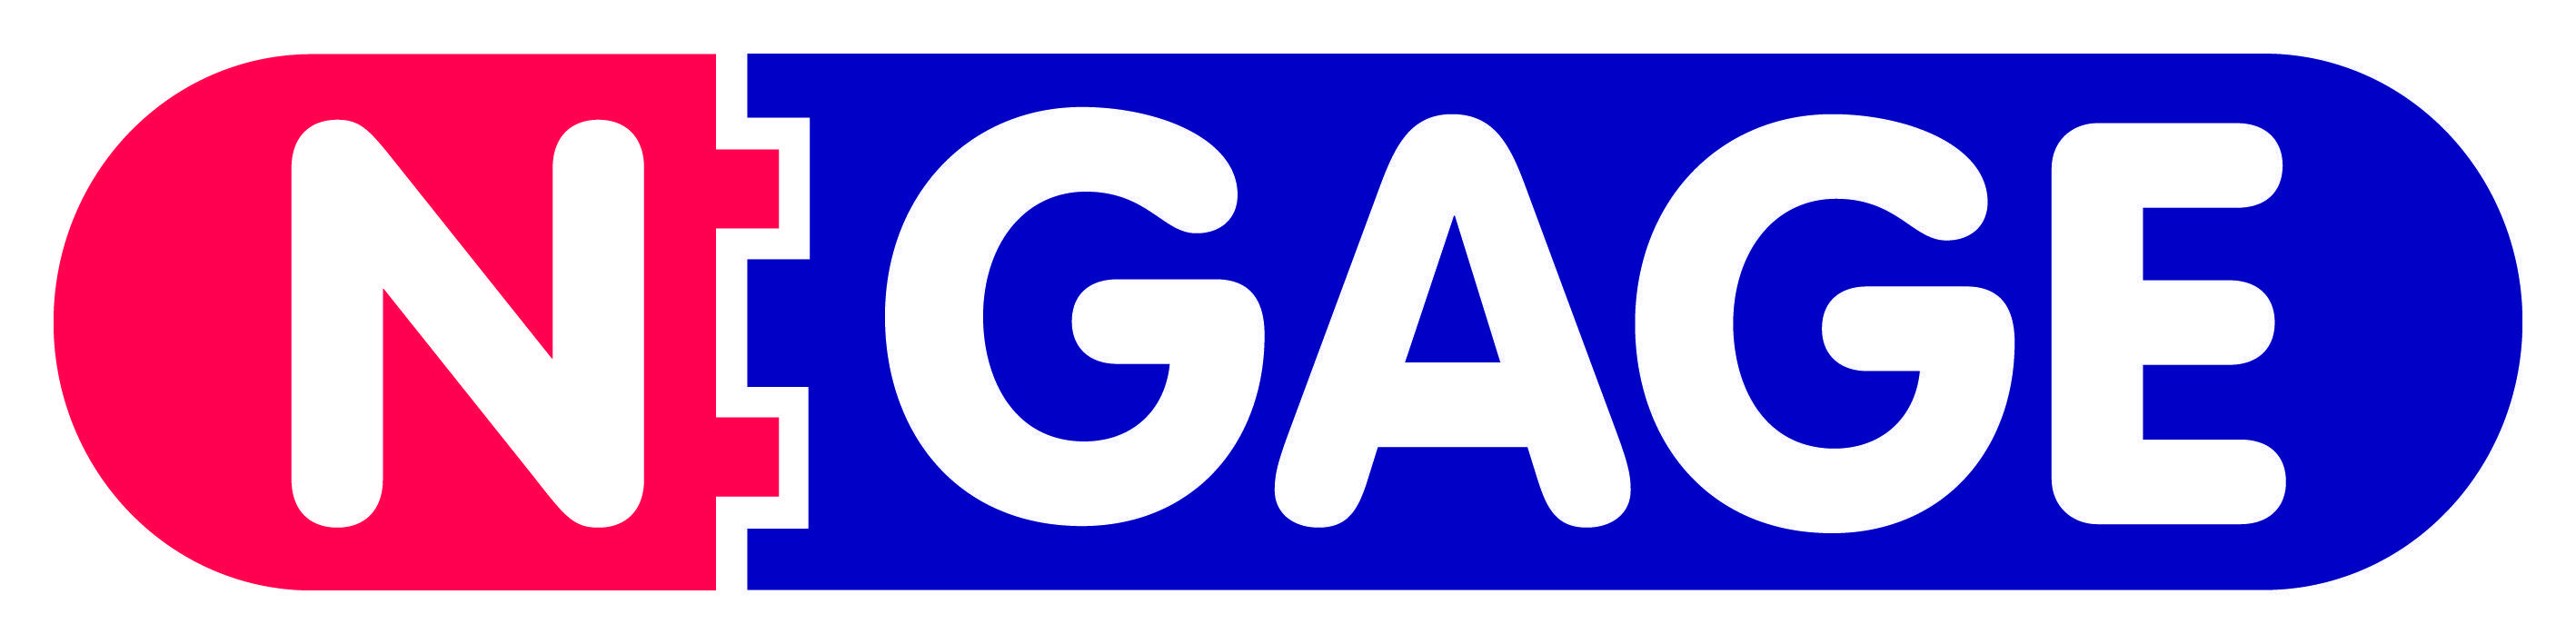 Gage Logo - N Gage. N Gage Free School Update